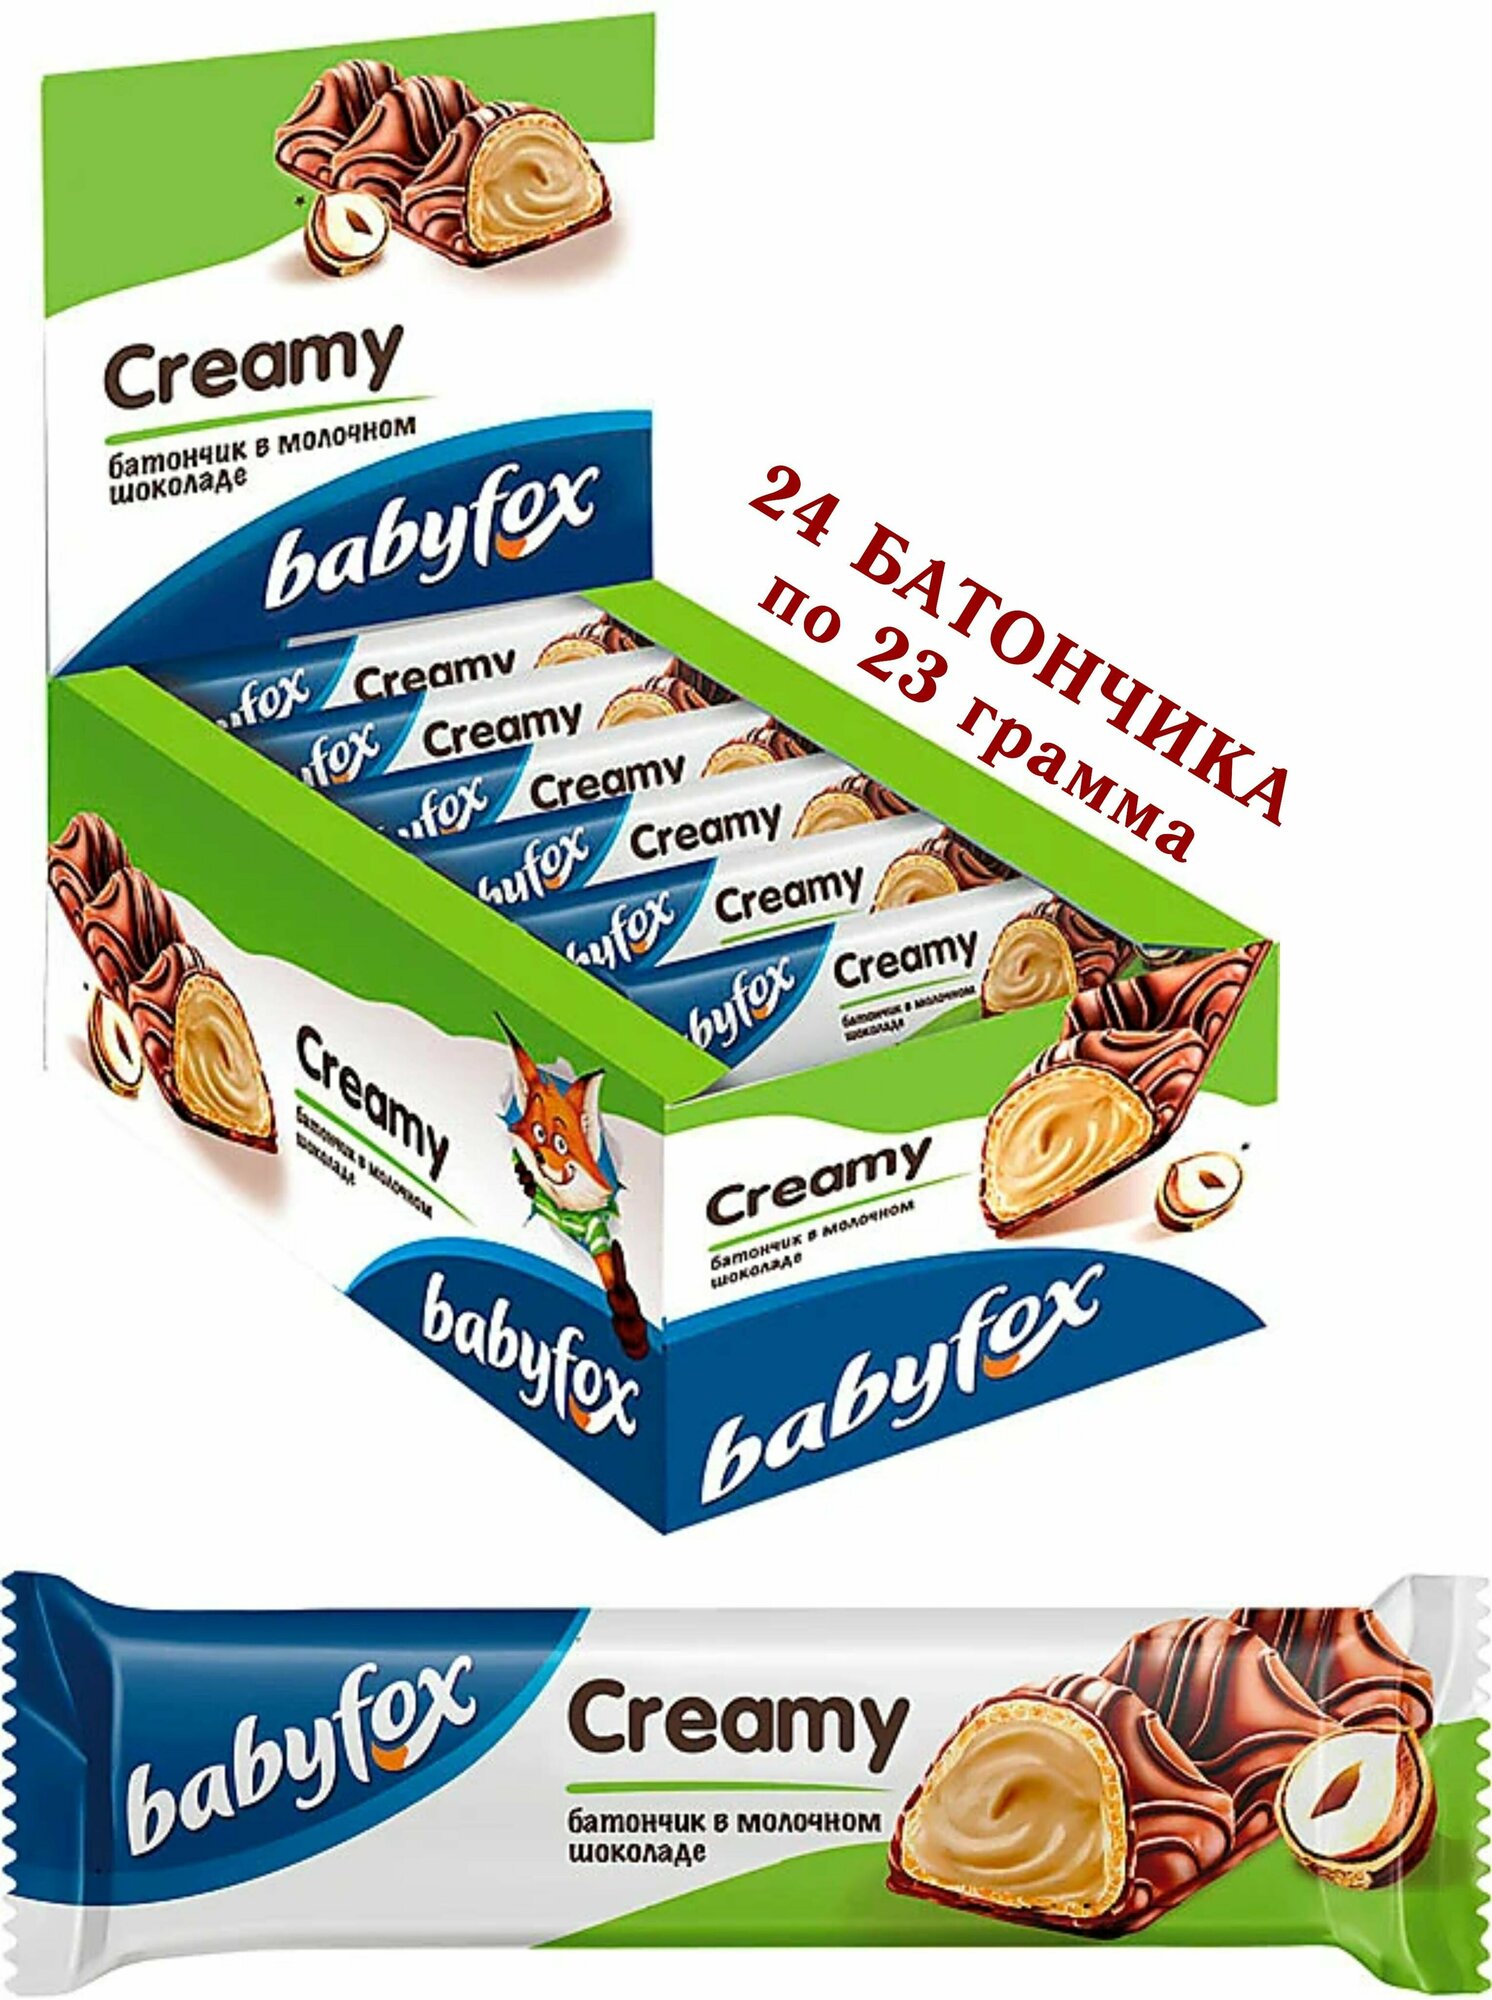 Вафельный батончик BabyFox CREAMY (Бэби Фокс) в молочном шоколаде, 24 штуки по 23 грамма